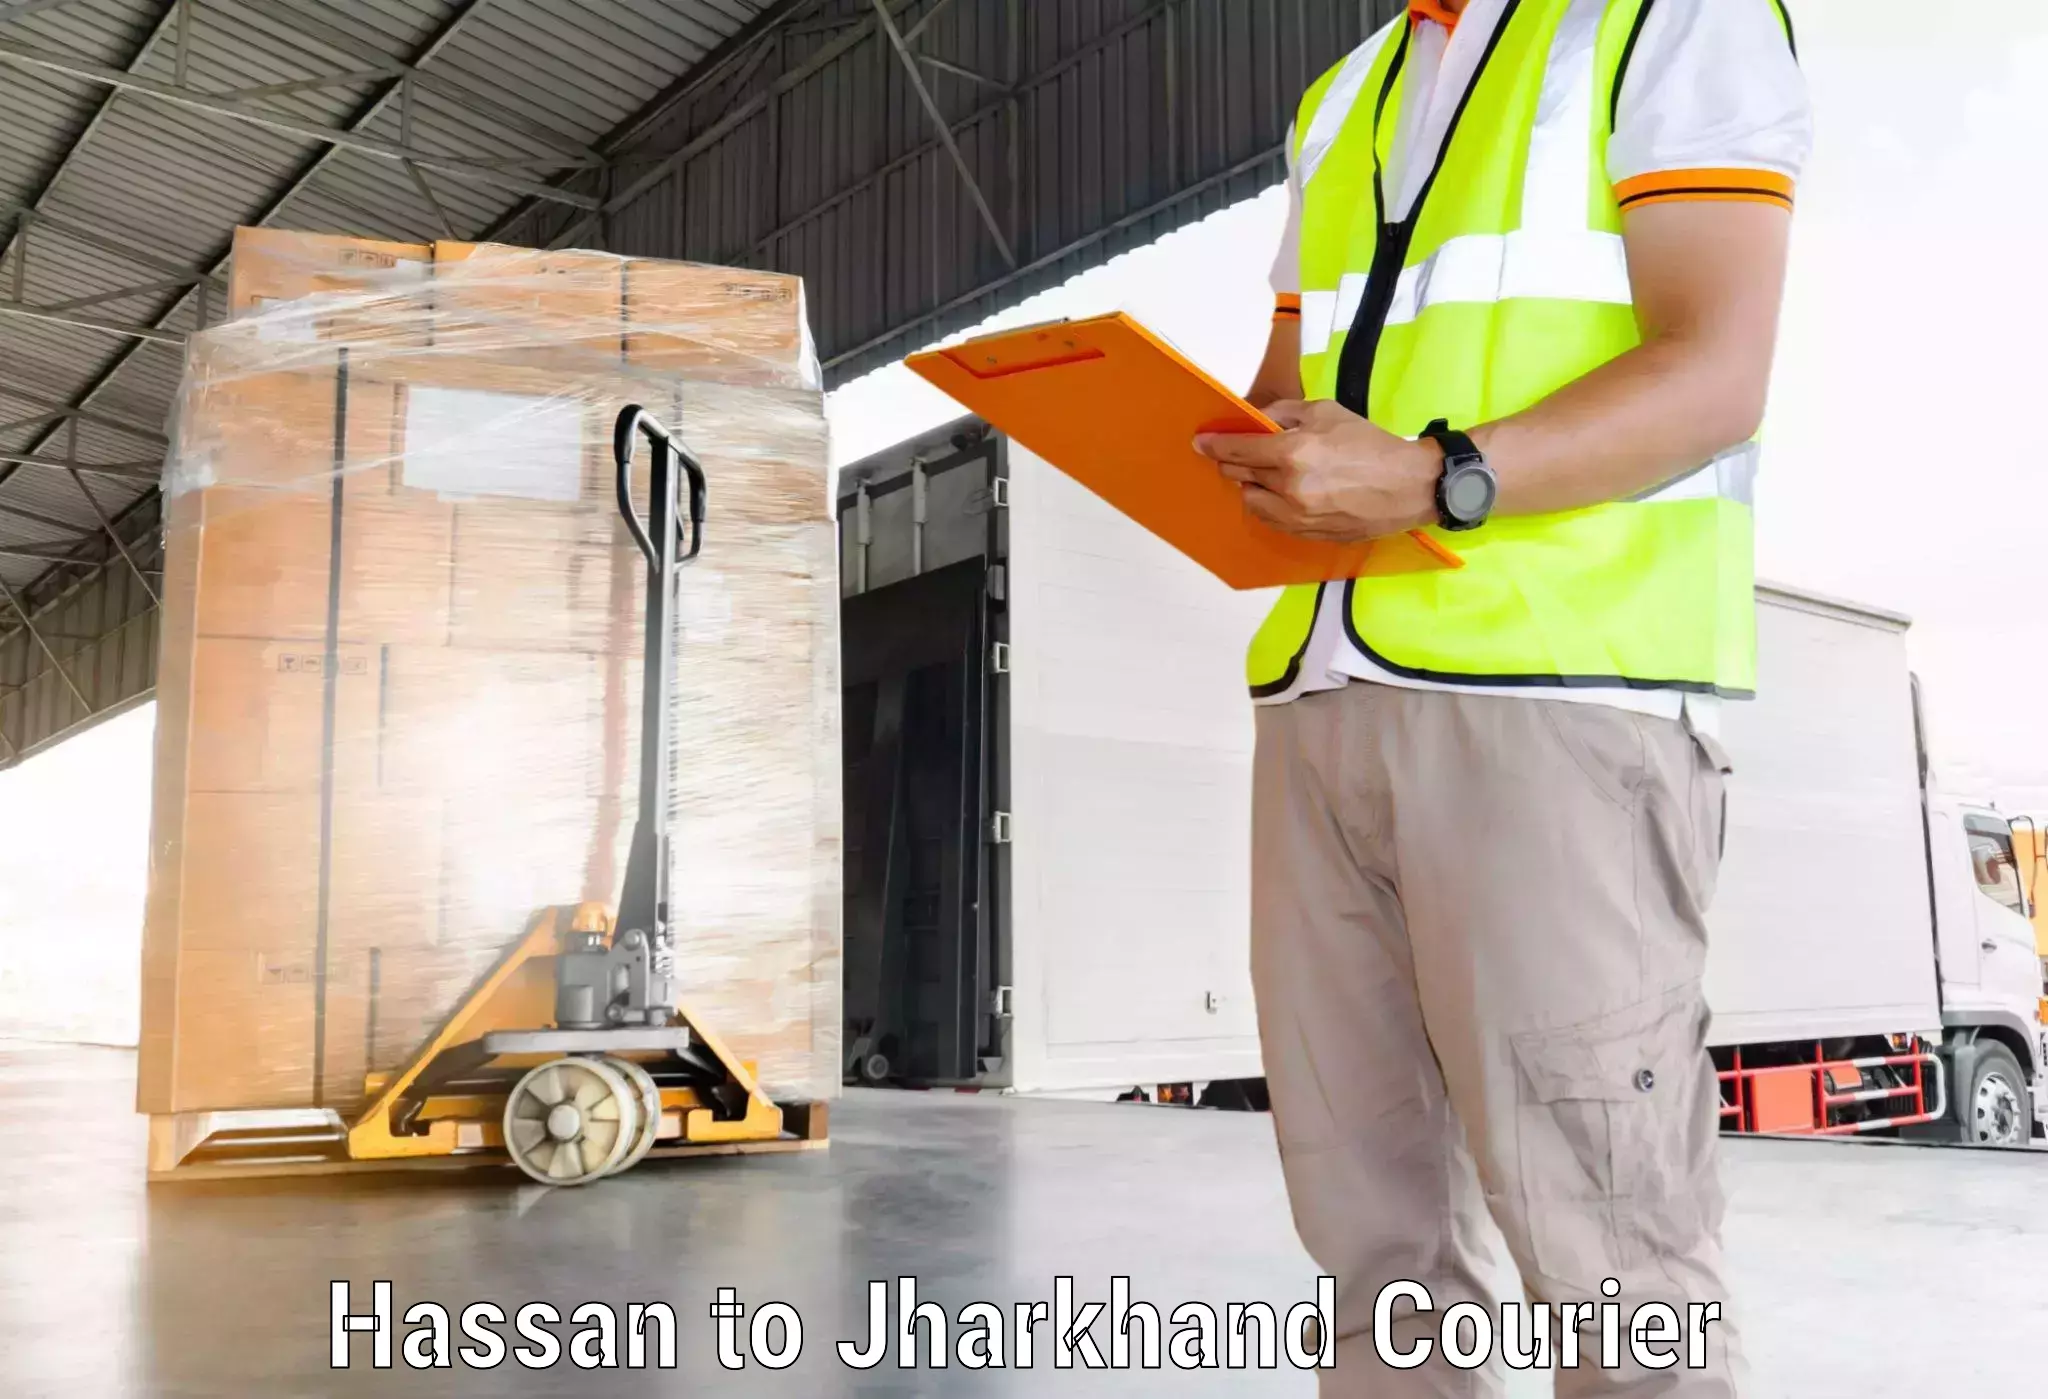 Efficient parcel service Hassan to Adityapur